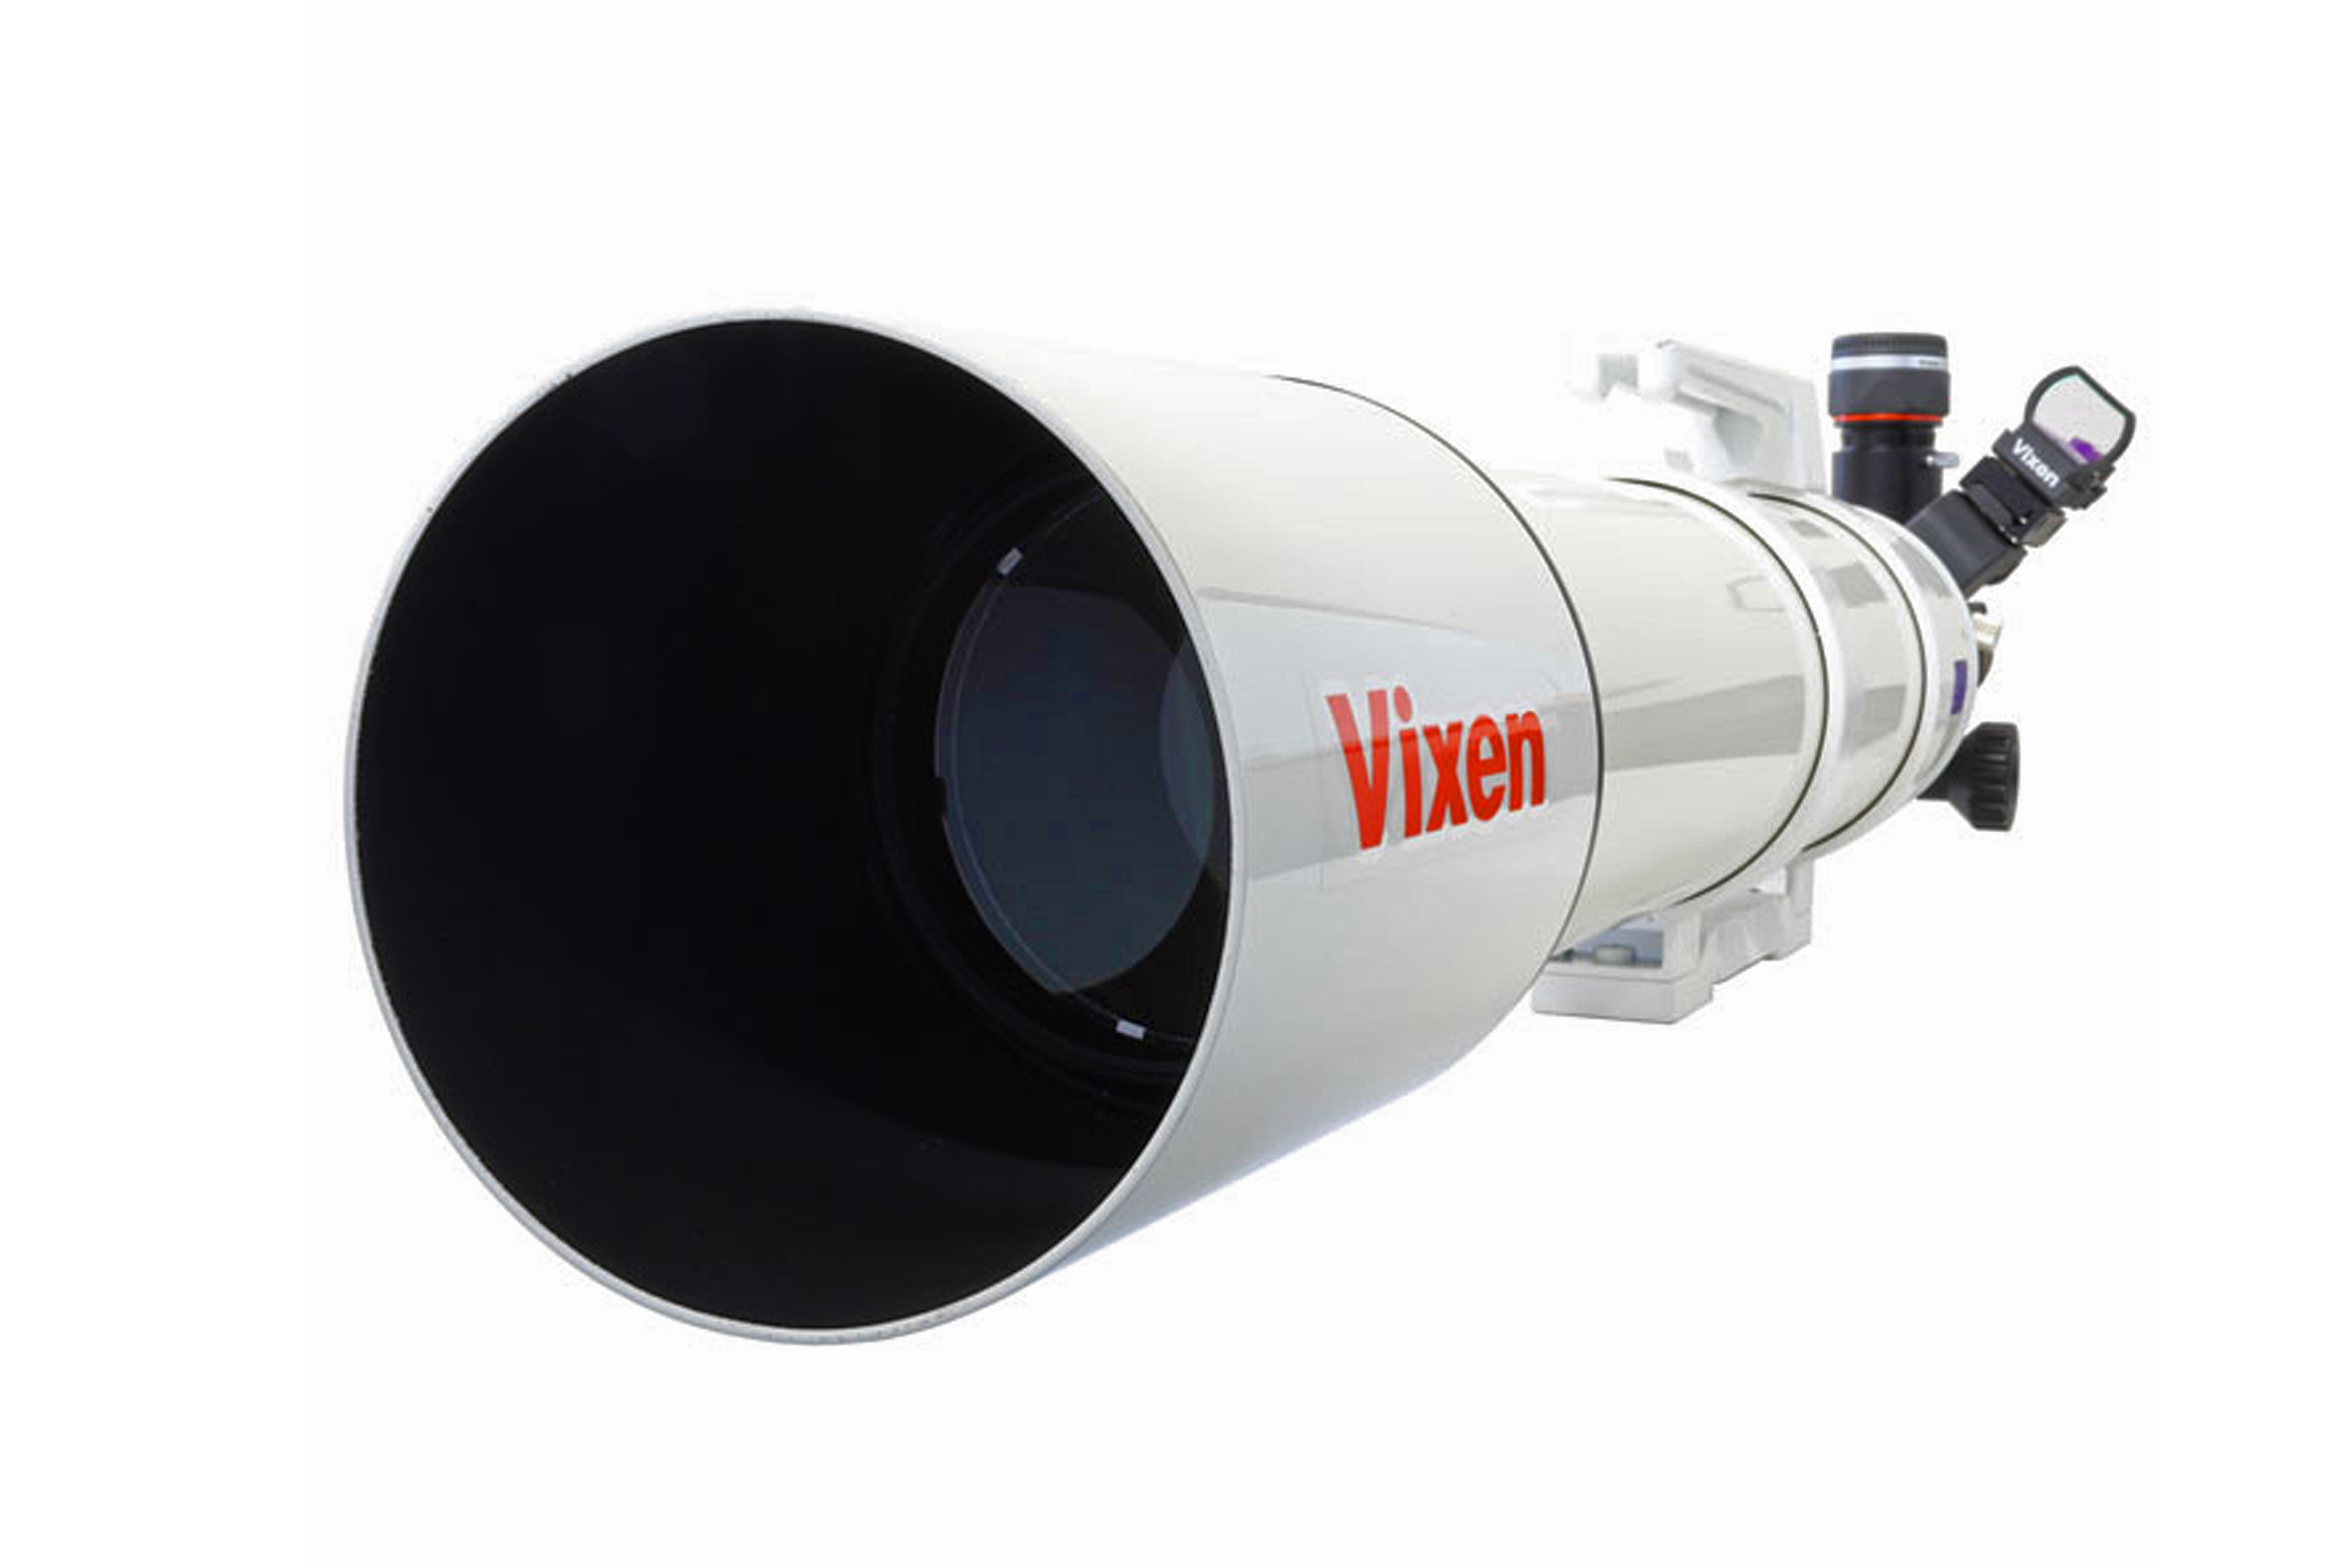 Réfracteur achromatique A105MII Vixen - tube optique